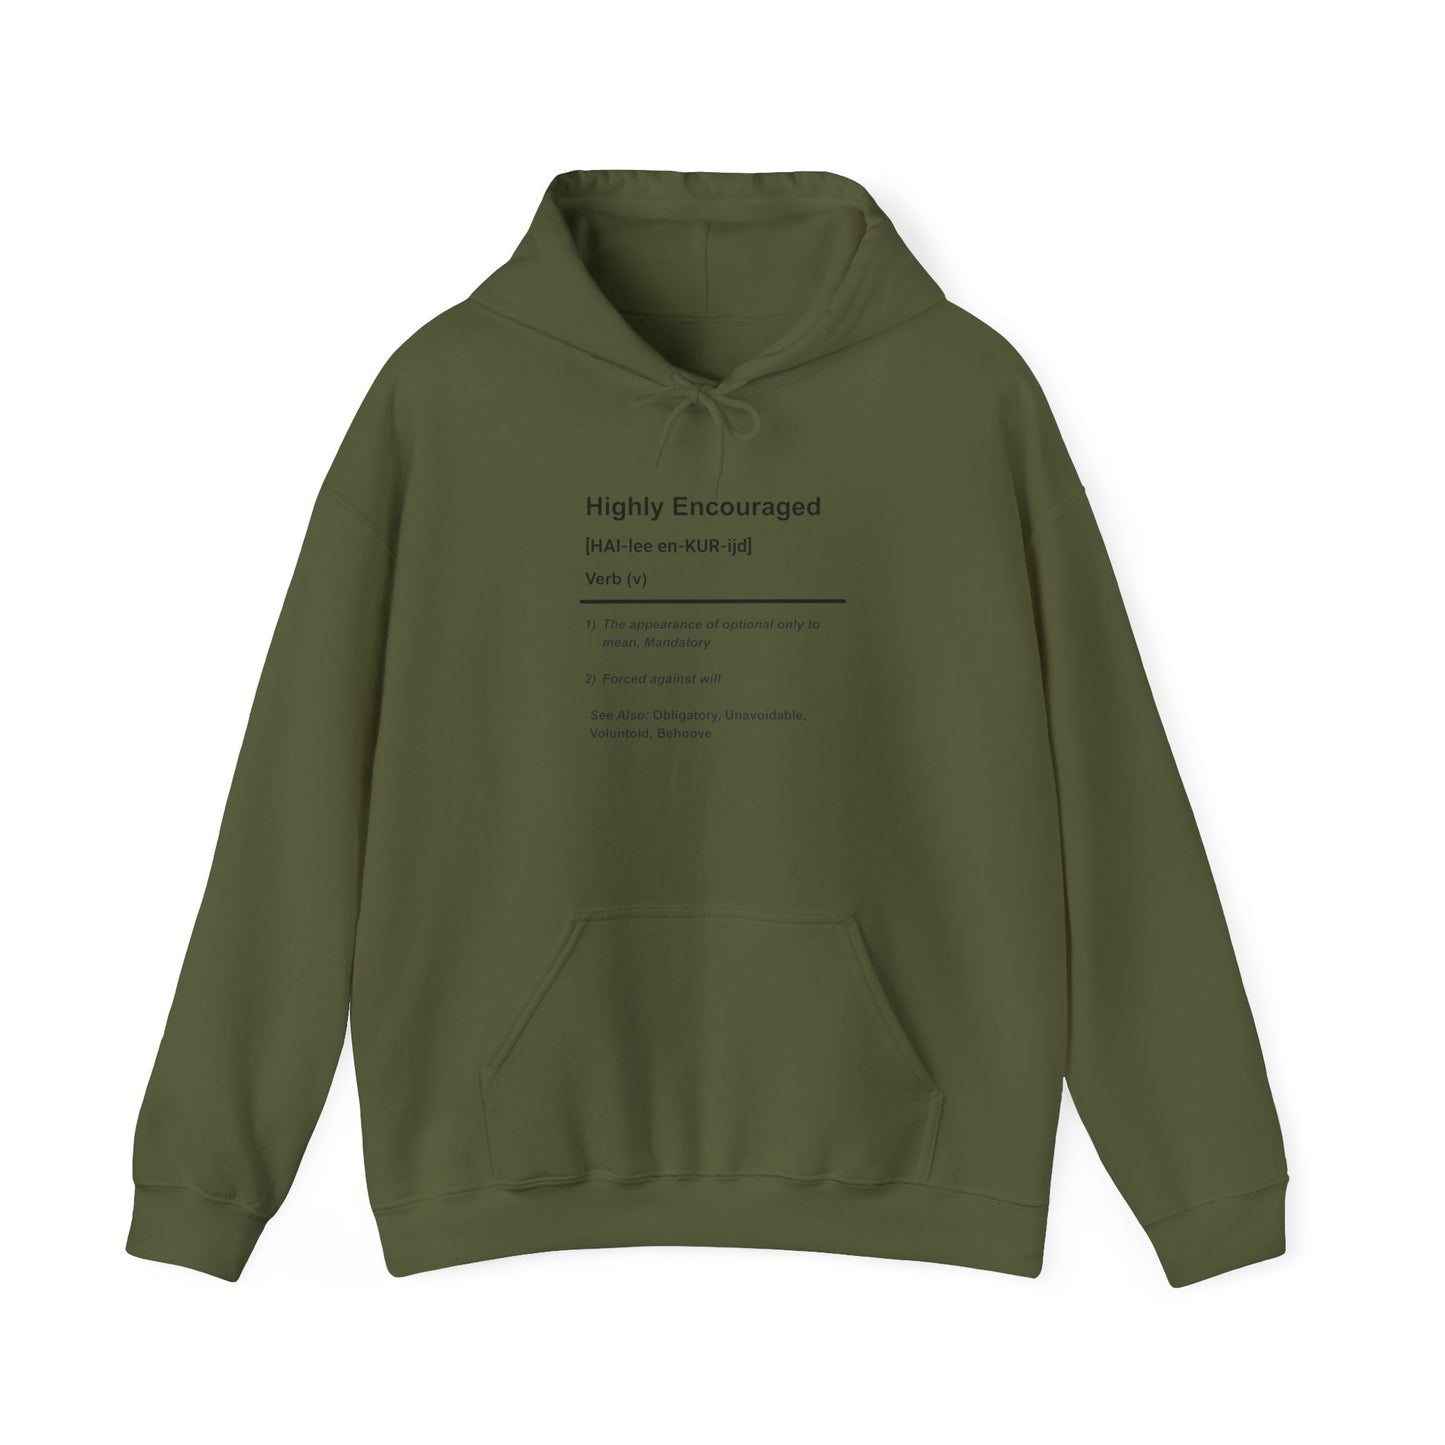 Highly Encouraged - Hooded Sweatshirt